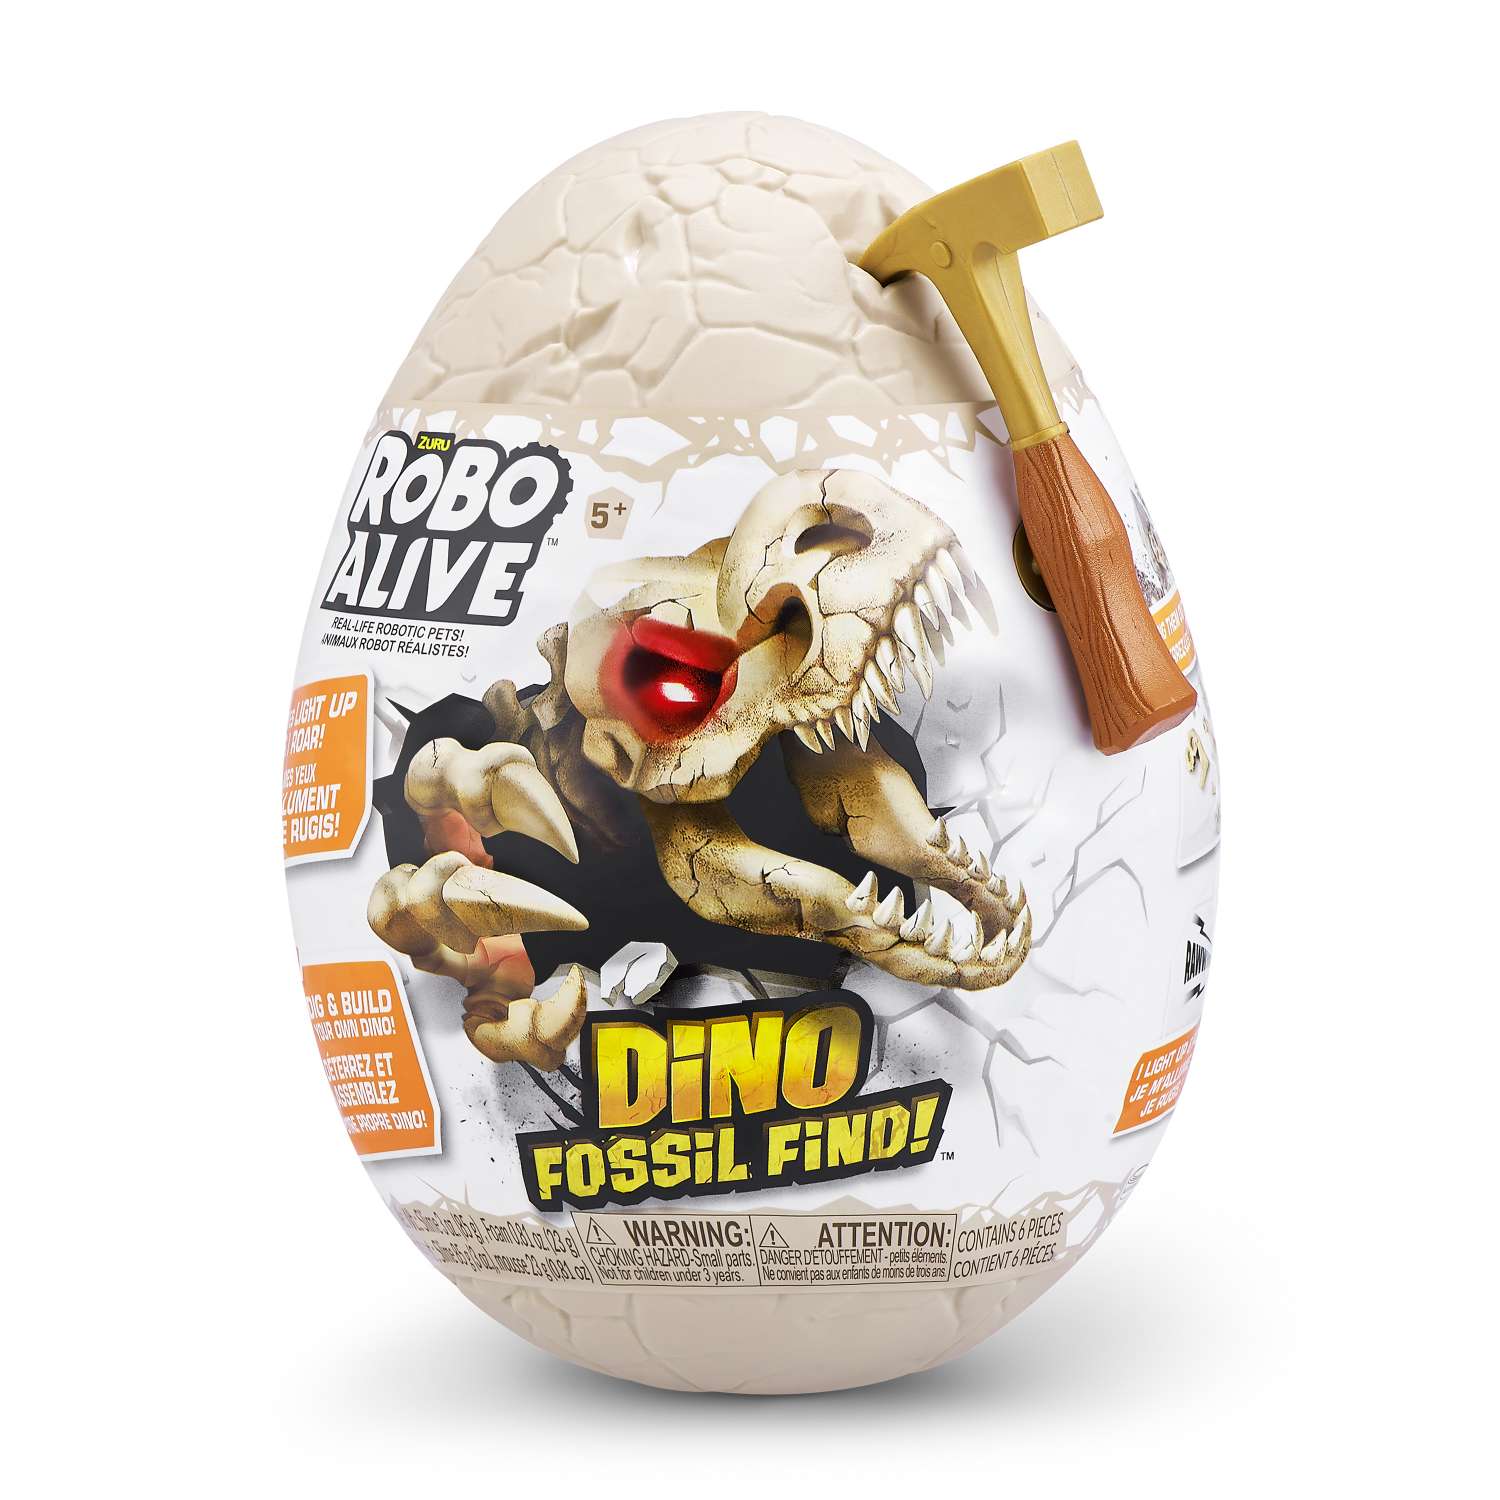 Набор игровой Zuru Robo Alive Dino Fossil Find Яйцо в непрозрачной упаковке (Сюрприз) 7156 - фото 1